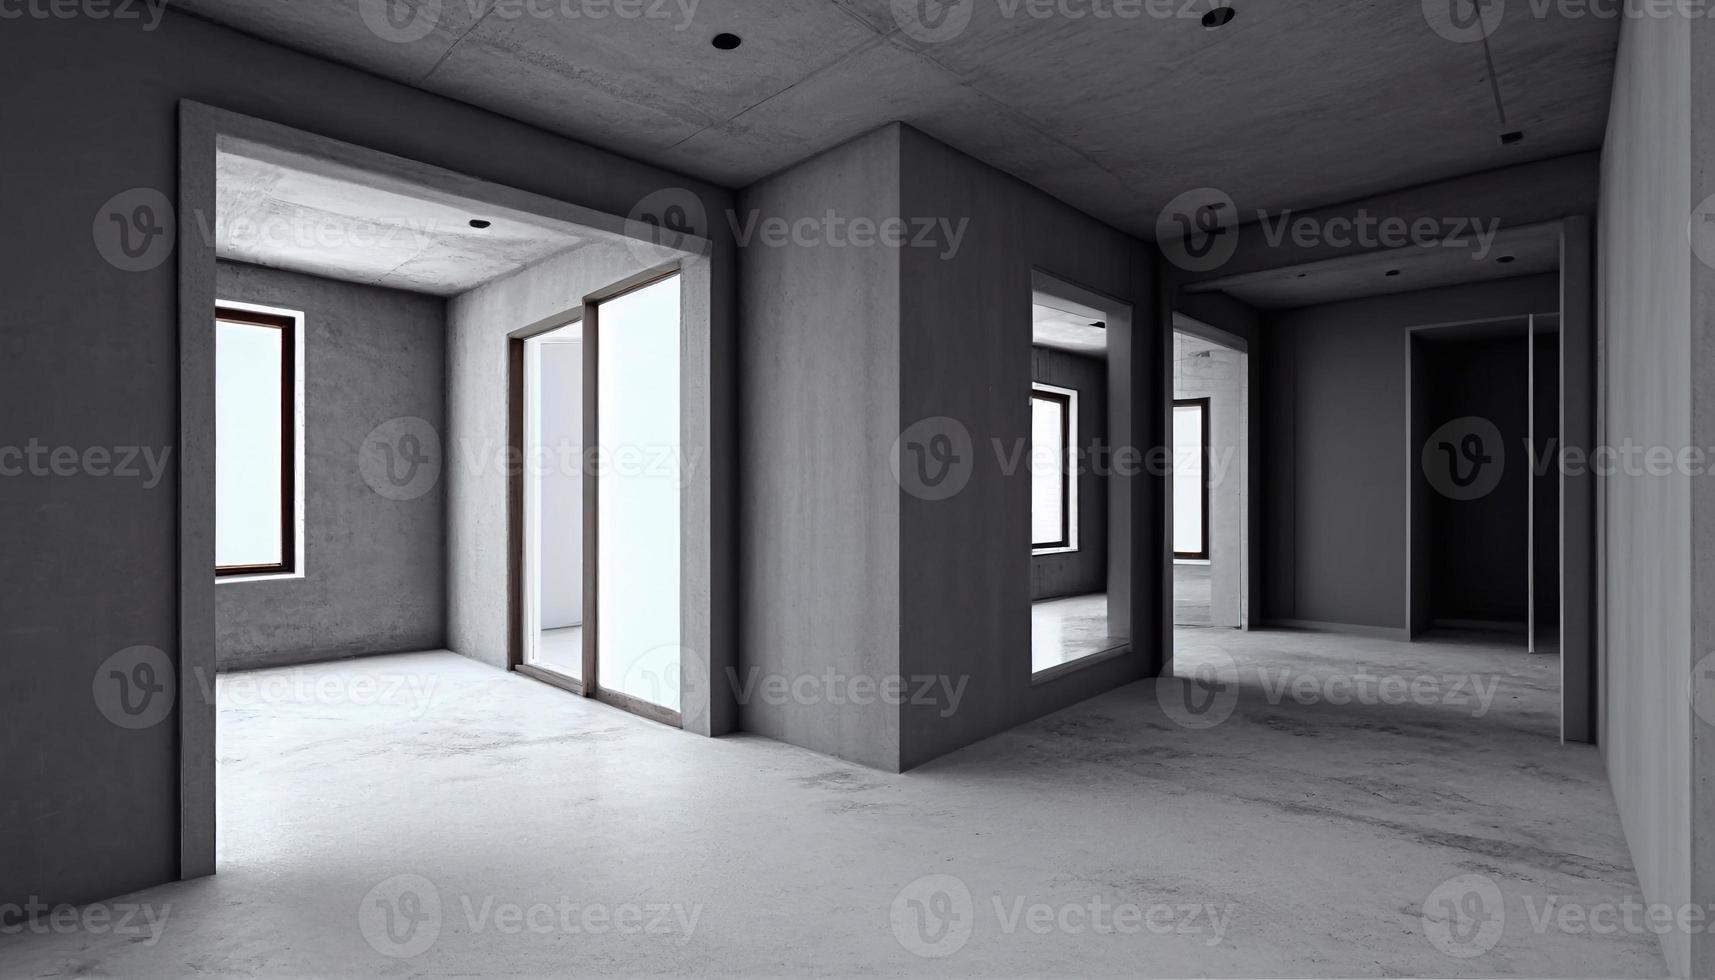 tömma levande rum lägenhet modern interiör . ljus Hem levande rum med bricka golv, fönster och tom vägg med tak. verklig fast egendom inuti design mall realistisk 3d illustration ai foto